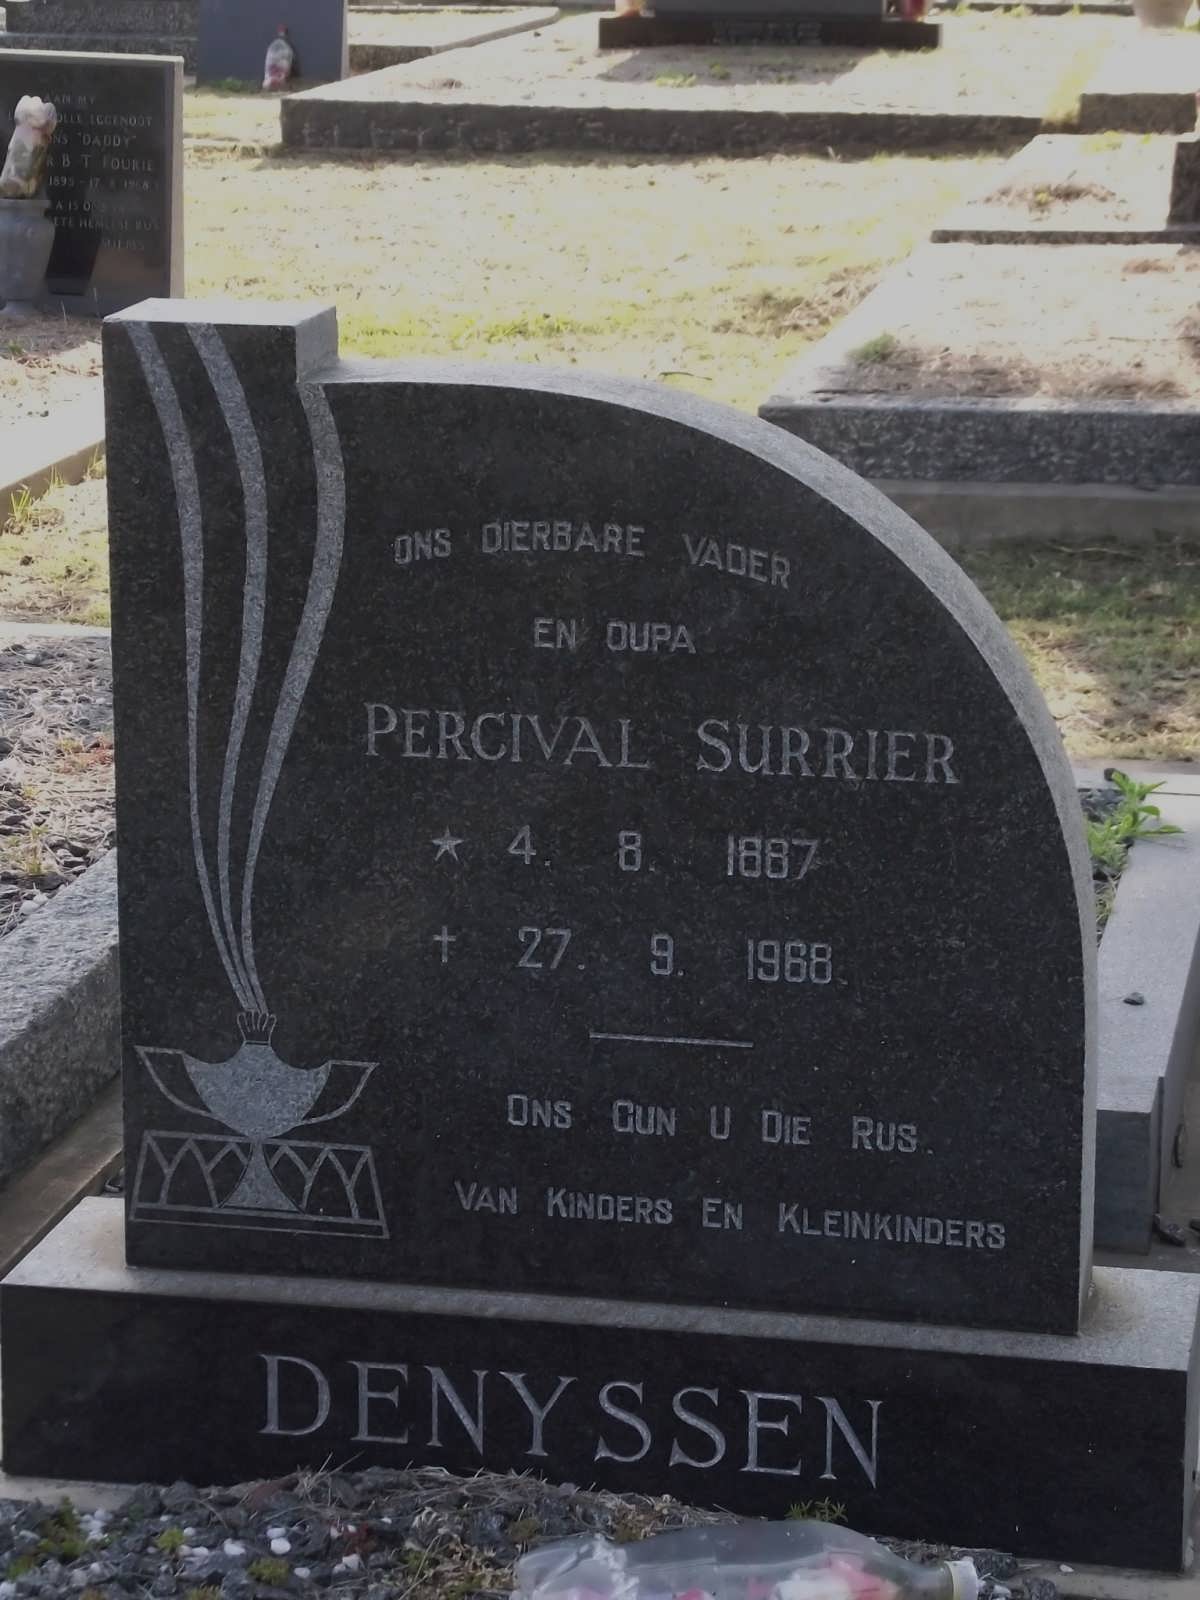 DENYSSEN Percival Surrier 1887-1968